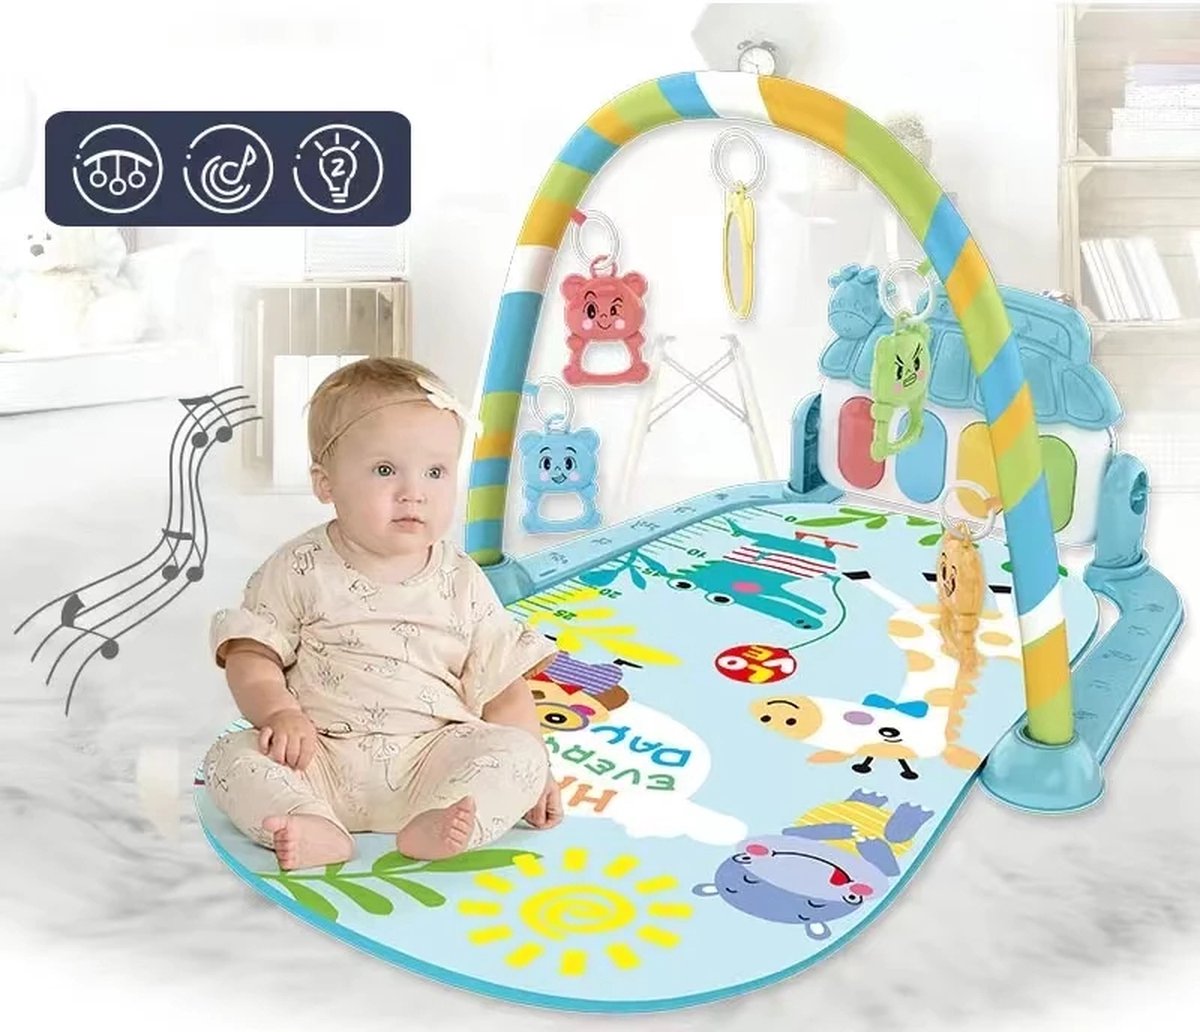 Sara Shop-Babygym Speeltapijt- Speelmat - Speelkleed - muziek speelkleed - Baby speelmat - baby cadeau - Babymat - Speeltapijt baby - speeltapijt meisje - speeltapijt voor jongens - kruipkleed voor kinderen